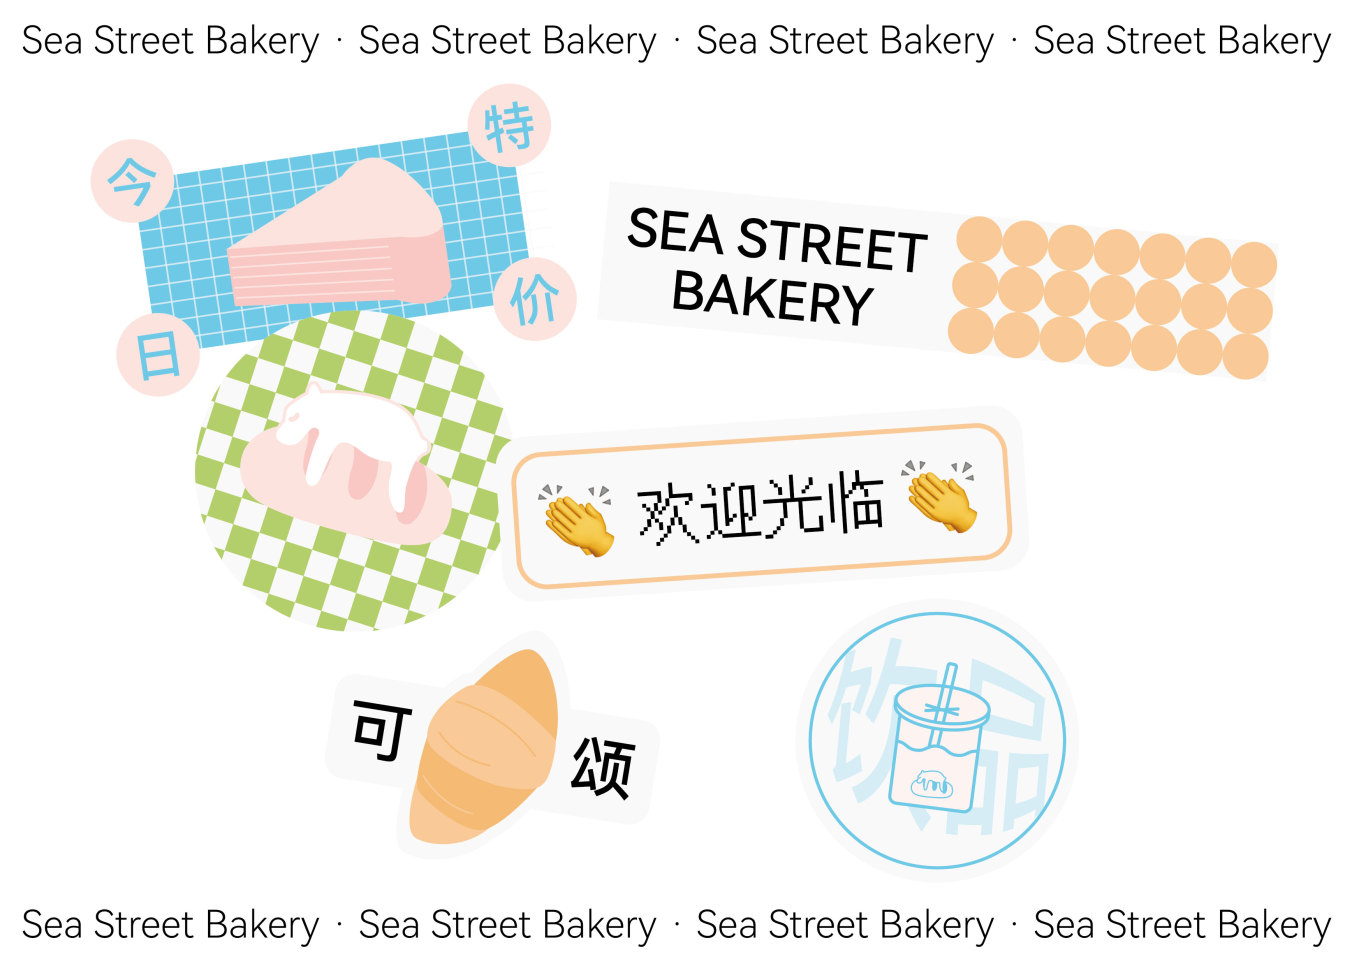 海街面包品牌設計圖2